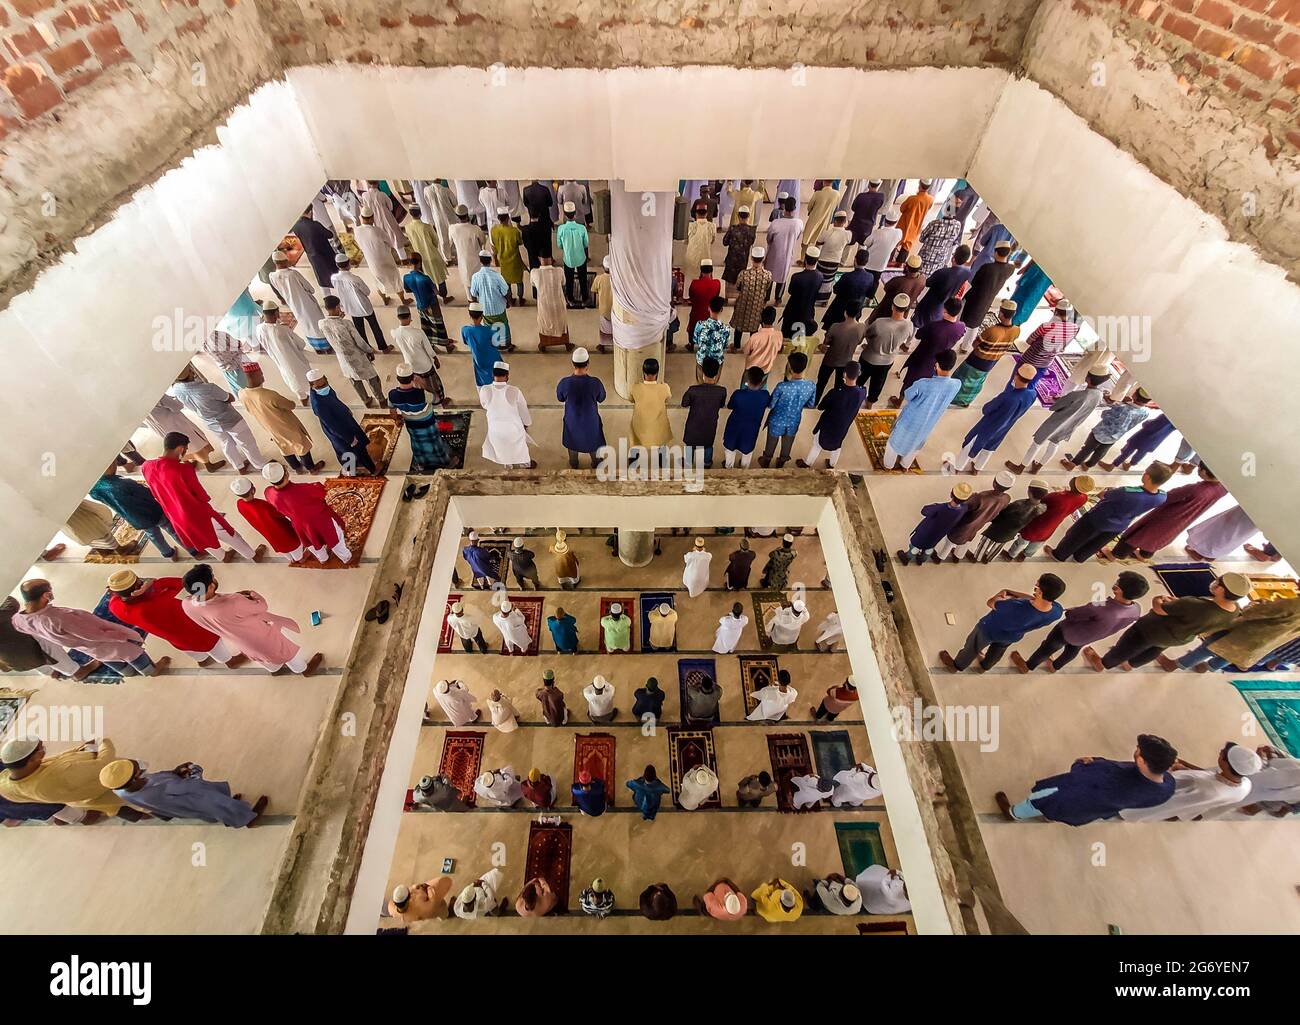 9. Juli 2021, Barishal, Bangladesch: Muslime beten freitags ohne jegliche soziale Distanz an einer Moschee, in der das Land unter einer Sperre steht, um die zweite Welle der COVID-19-Pandemie in der Stadt Barishal, Bangladesch, einzudämmen. (Bild: © Mustasinur Rahman Alvi/ZUMA Wire) Stockfoto